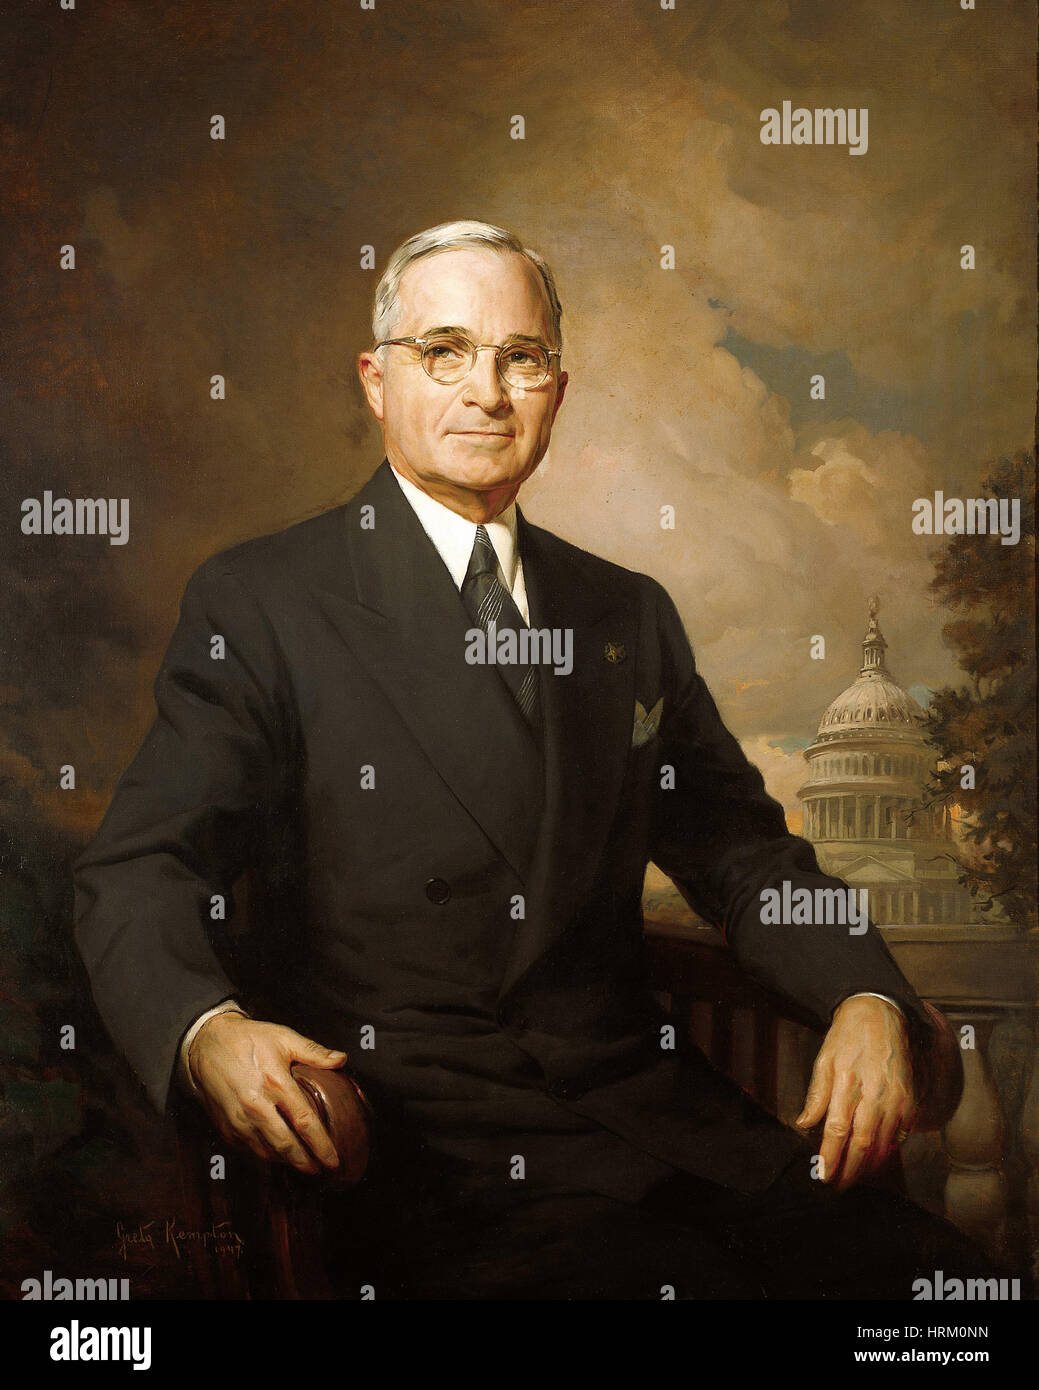 HARRY TRUMAN (1884-1972) ritratto ufficiale come 33a Presidente degli Stati Uniti nel 1945 Foto Stock